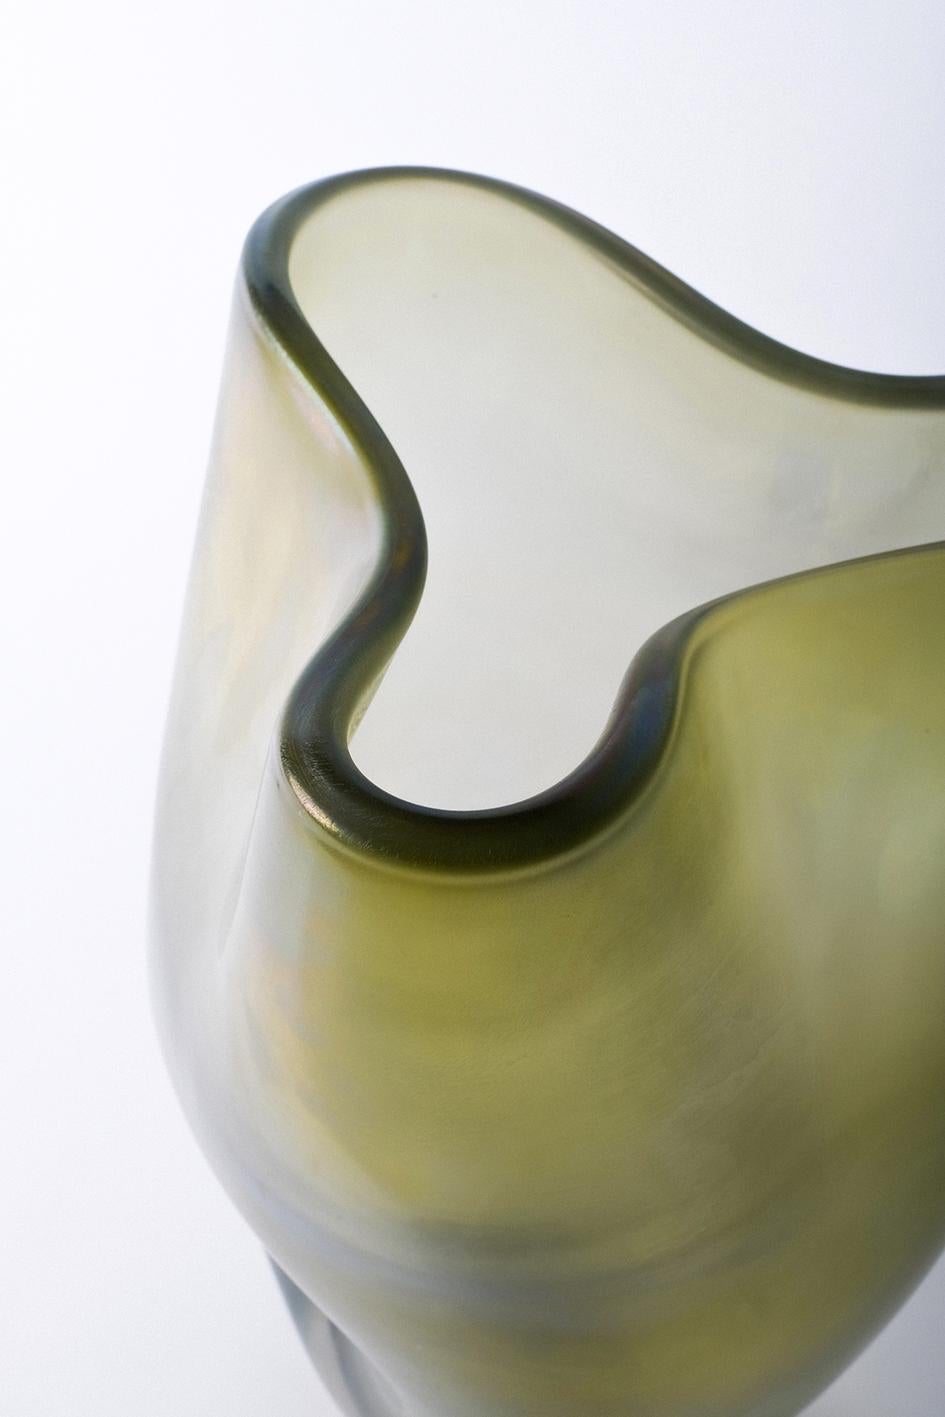 Bacan ist eine Vase aus der Laguna-Kollektion, die von Ludovica+Roberto Palomba für Purho im Frühjahr 2022 entworfen wurde.
Charakteristisch für Bacan - sind großzügige Formen mit nach oben gefalteten Kanten  dessen Name sich auf den sandigen